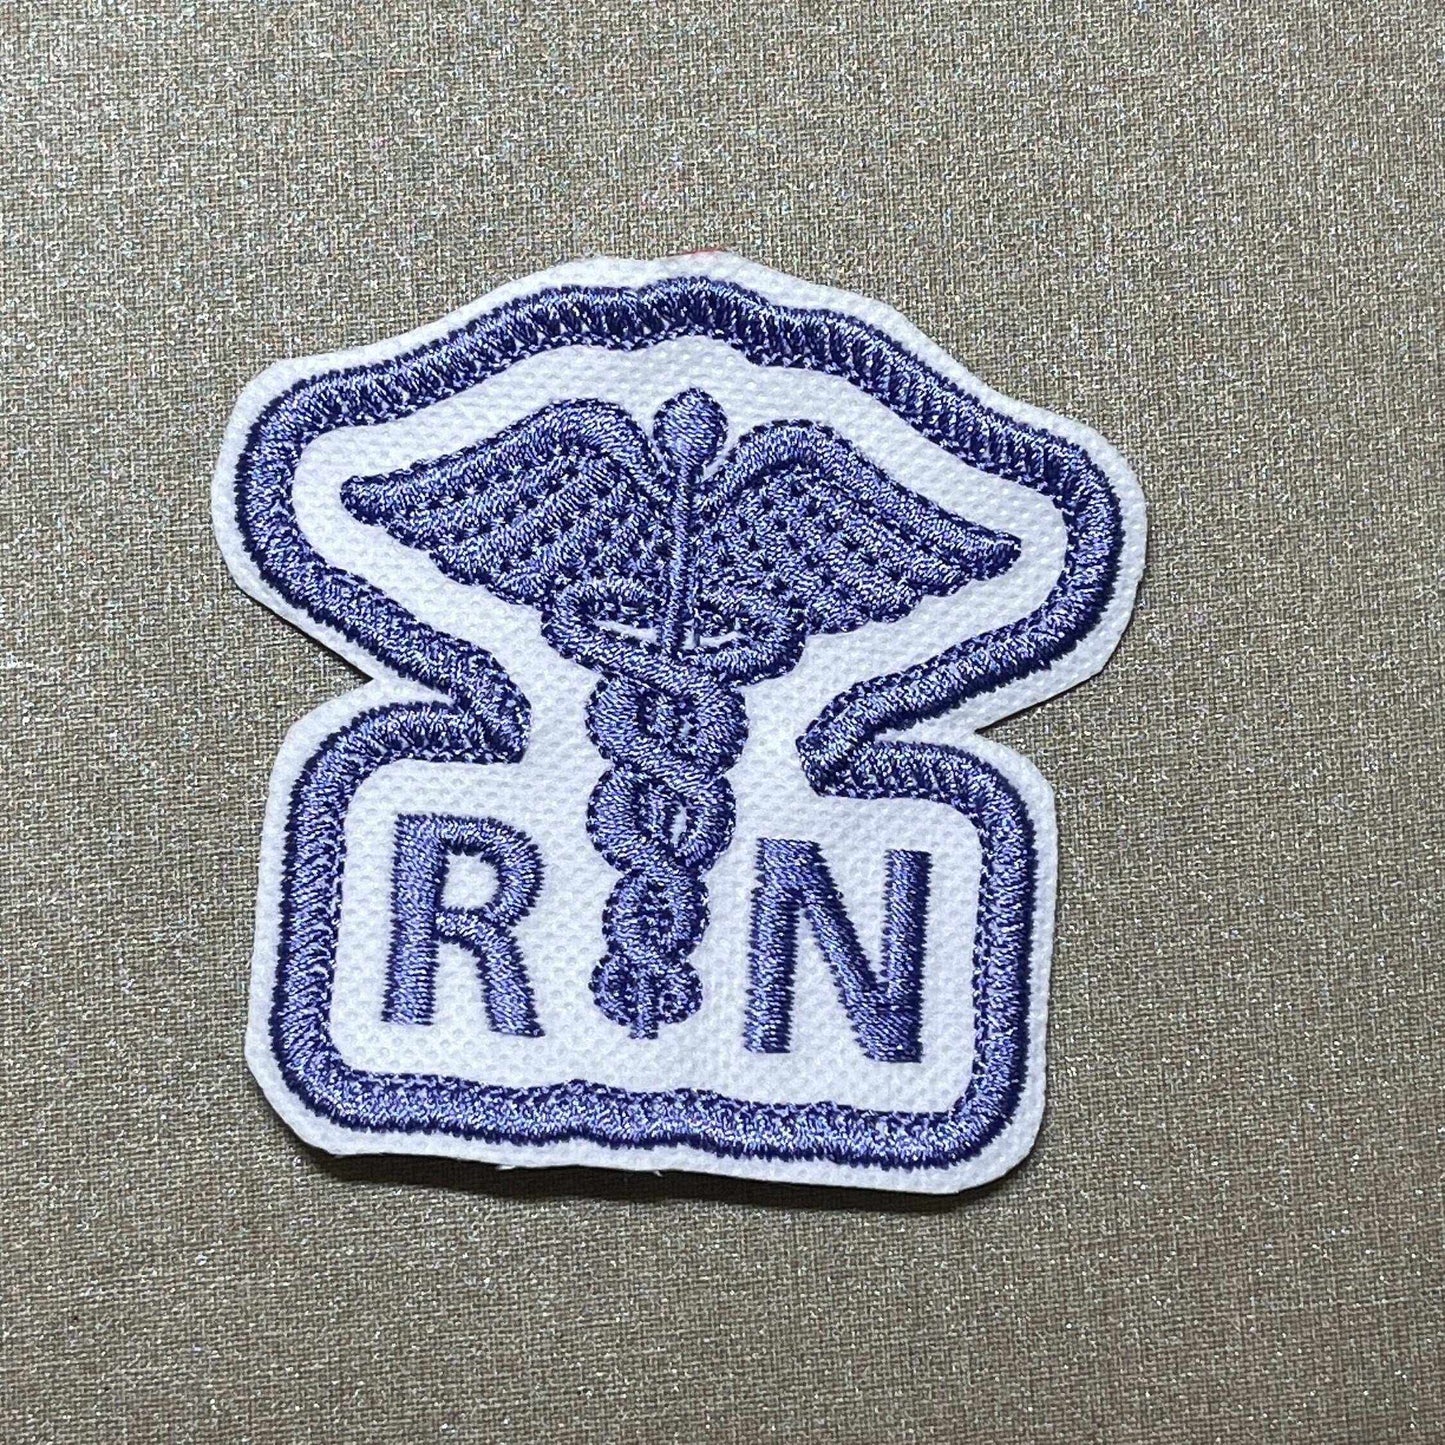 Nurse Medical Caduceus Embroidered Patch